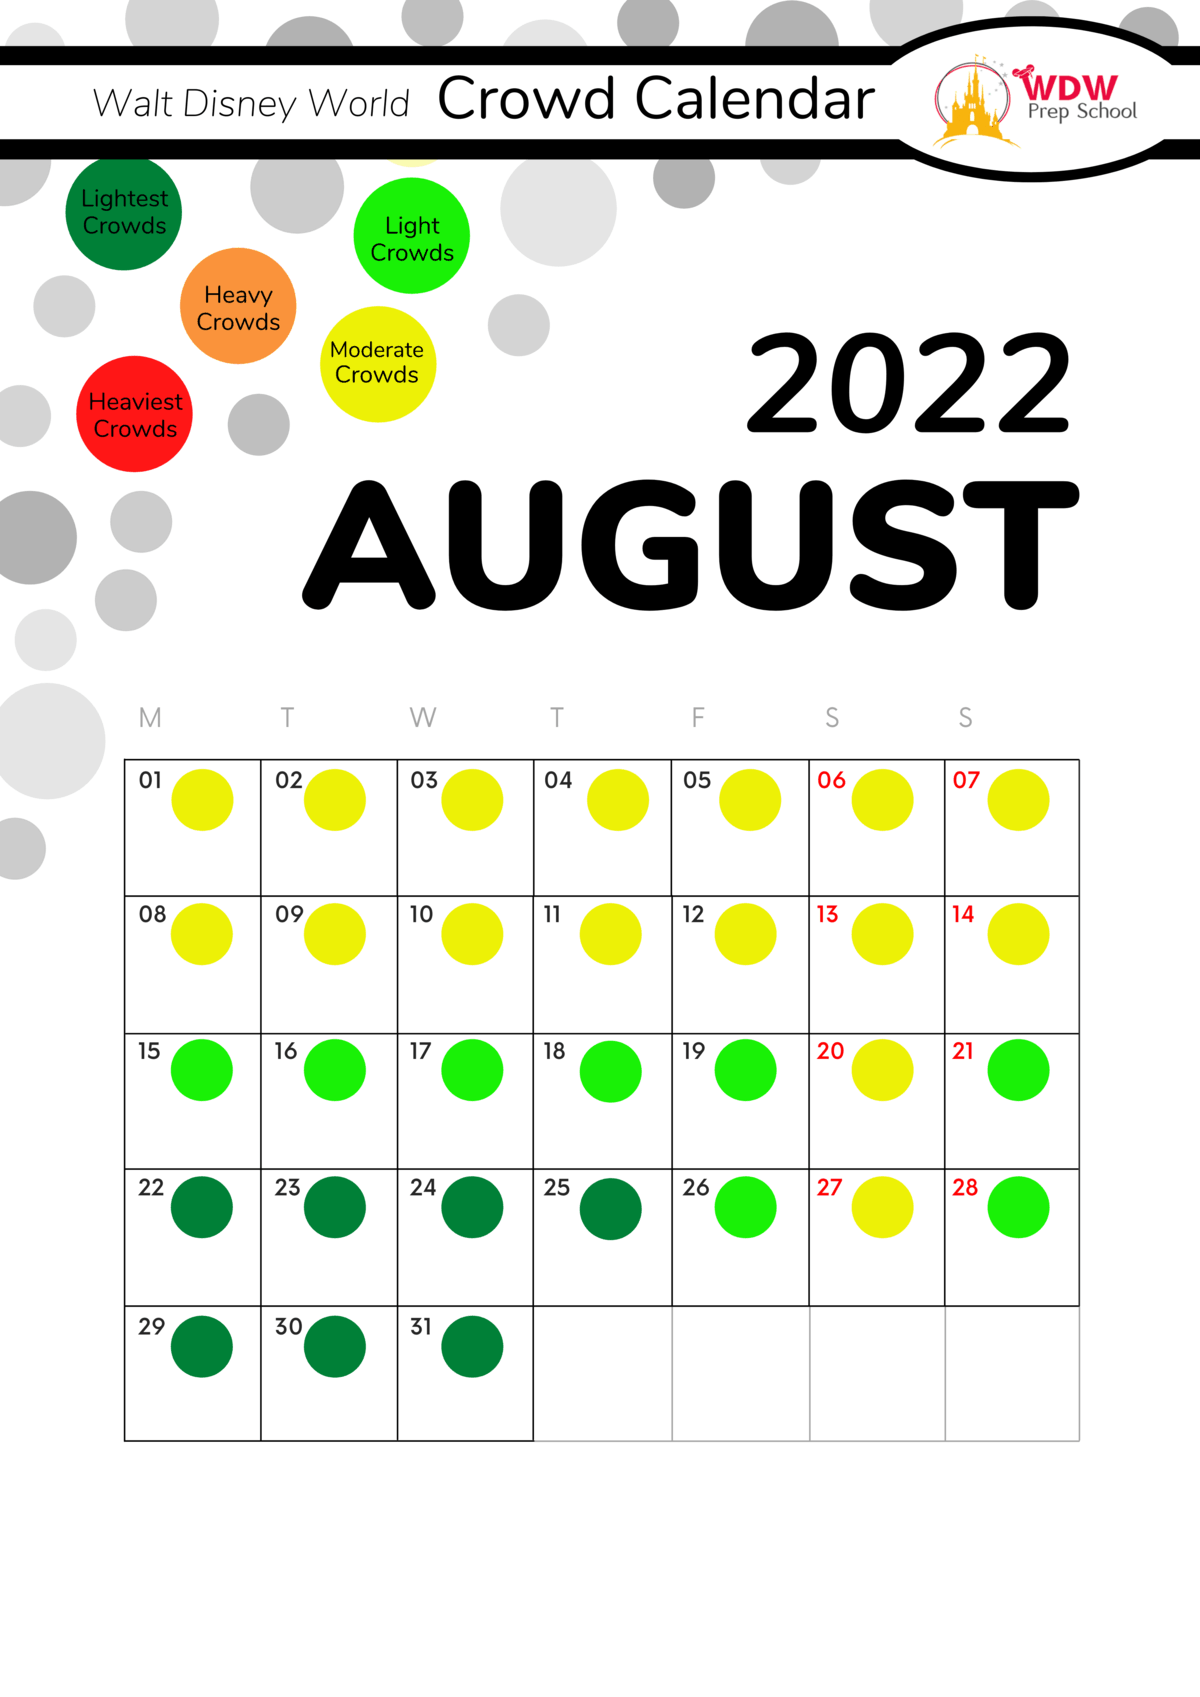 Extra Magic Hours Calendar 2022 Disney World 2022 Crowd Calendar (Best Times To Go)